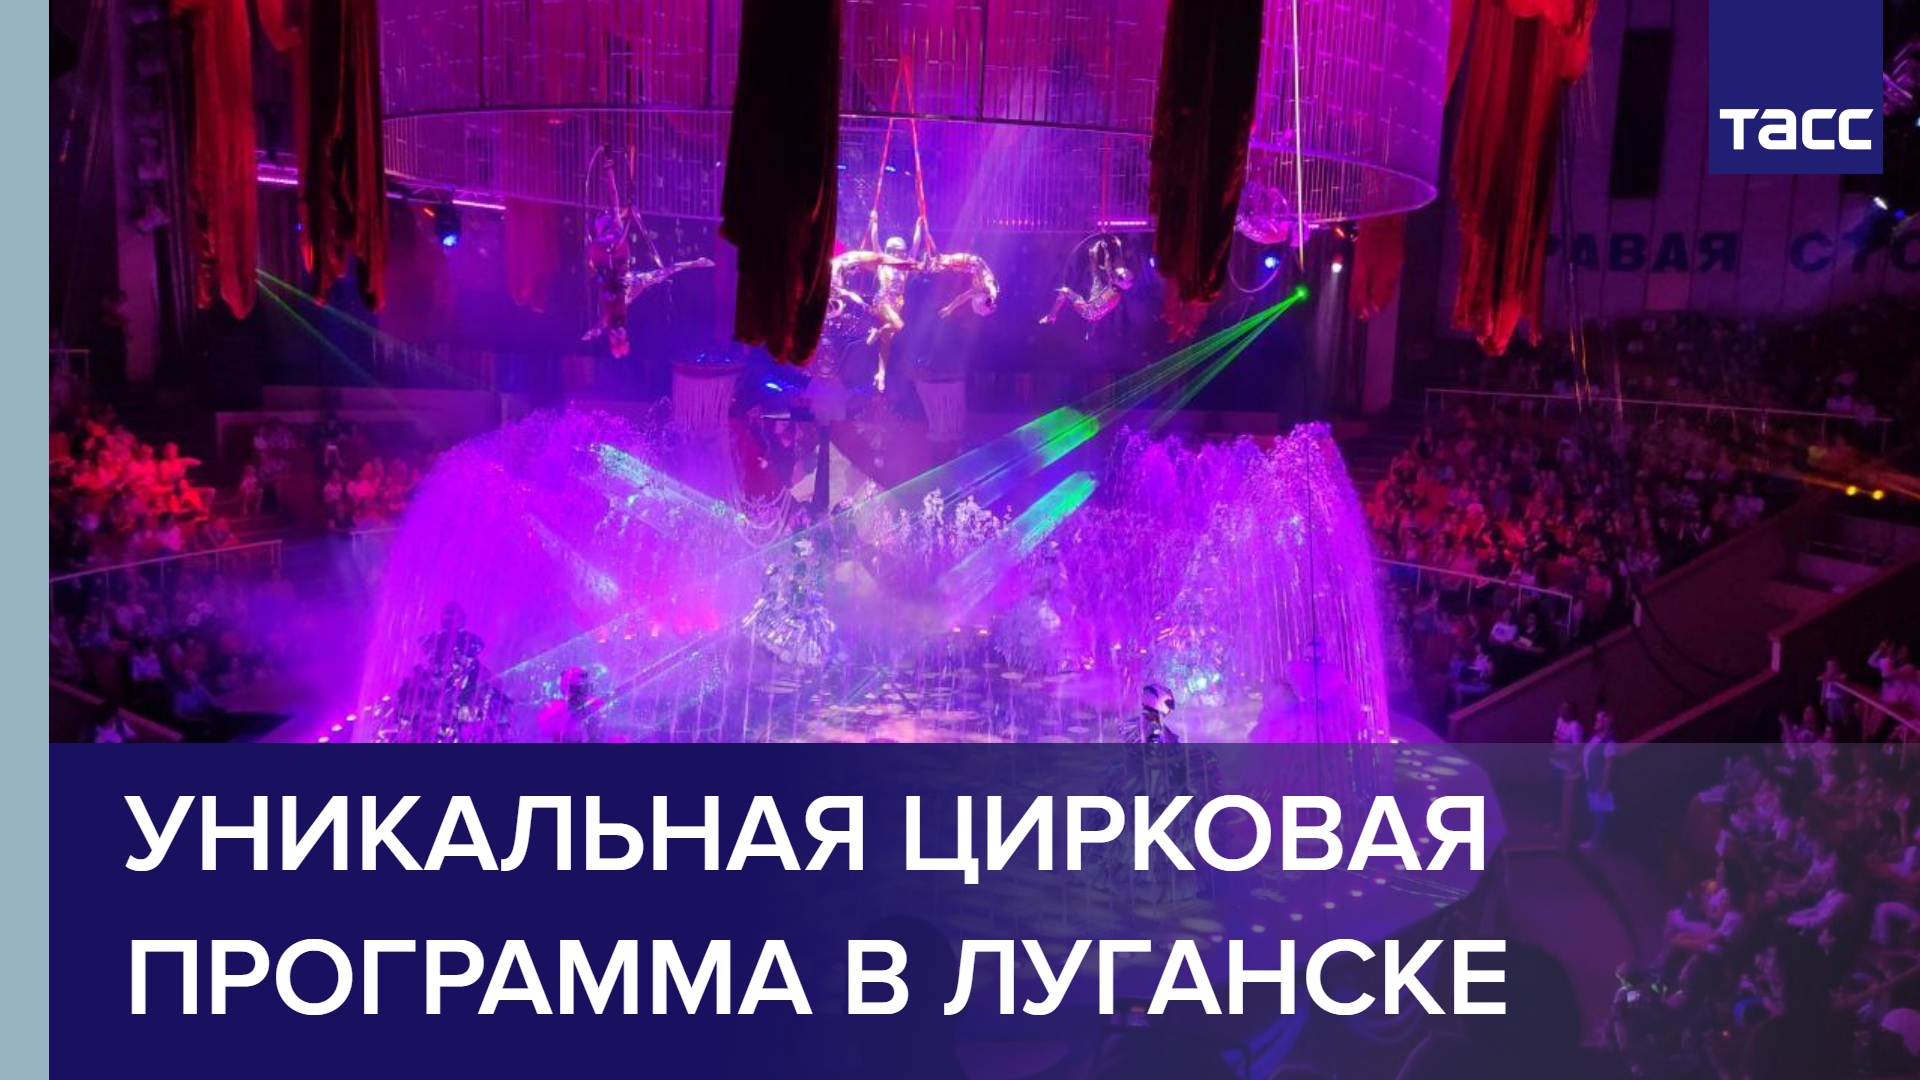 Росгосцирк впервые представил уникальную цирковую программу в Луганске